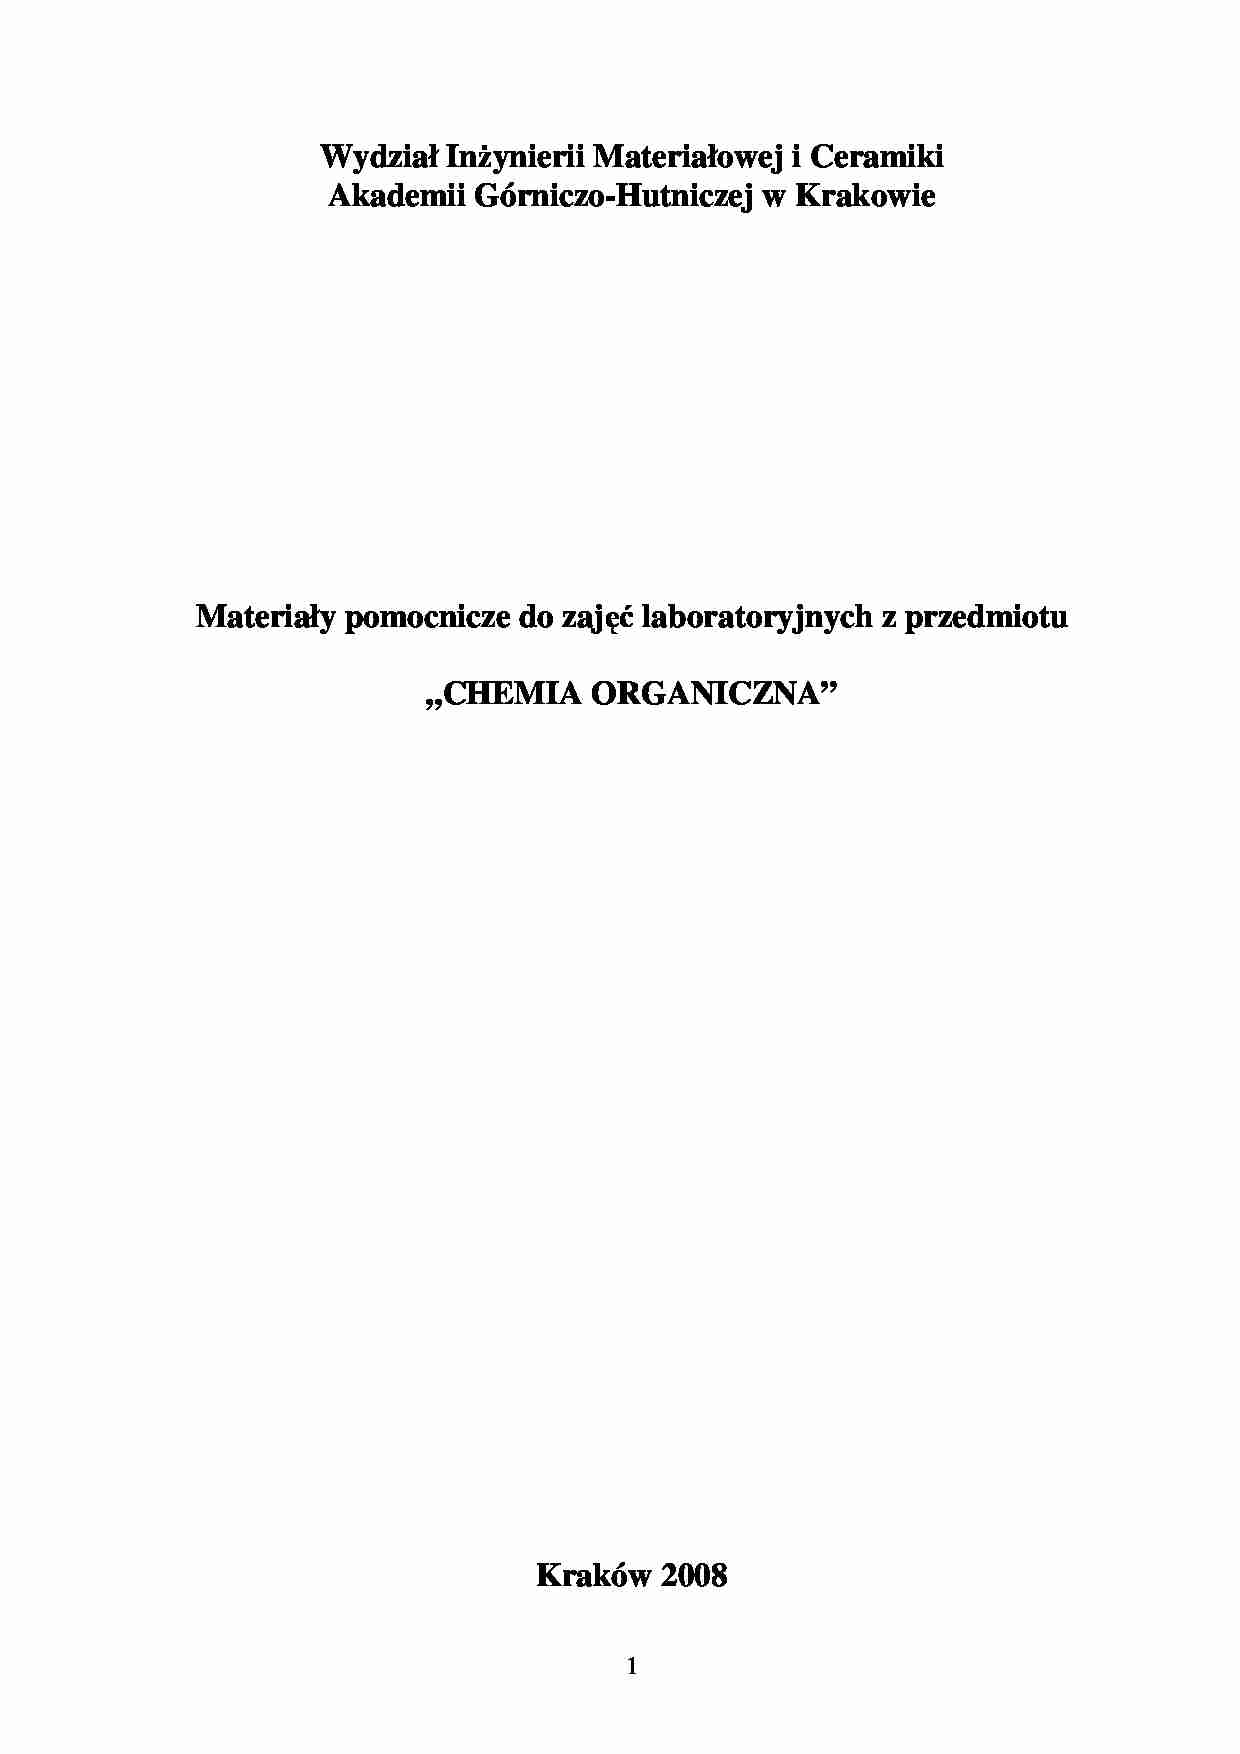 Chemia organiczna - materiały pomocnicze - Destylacja - strona 1